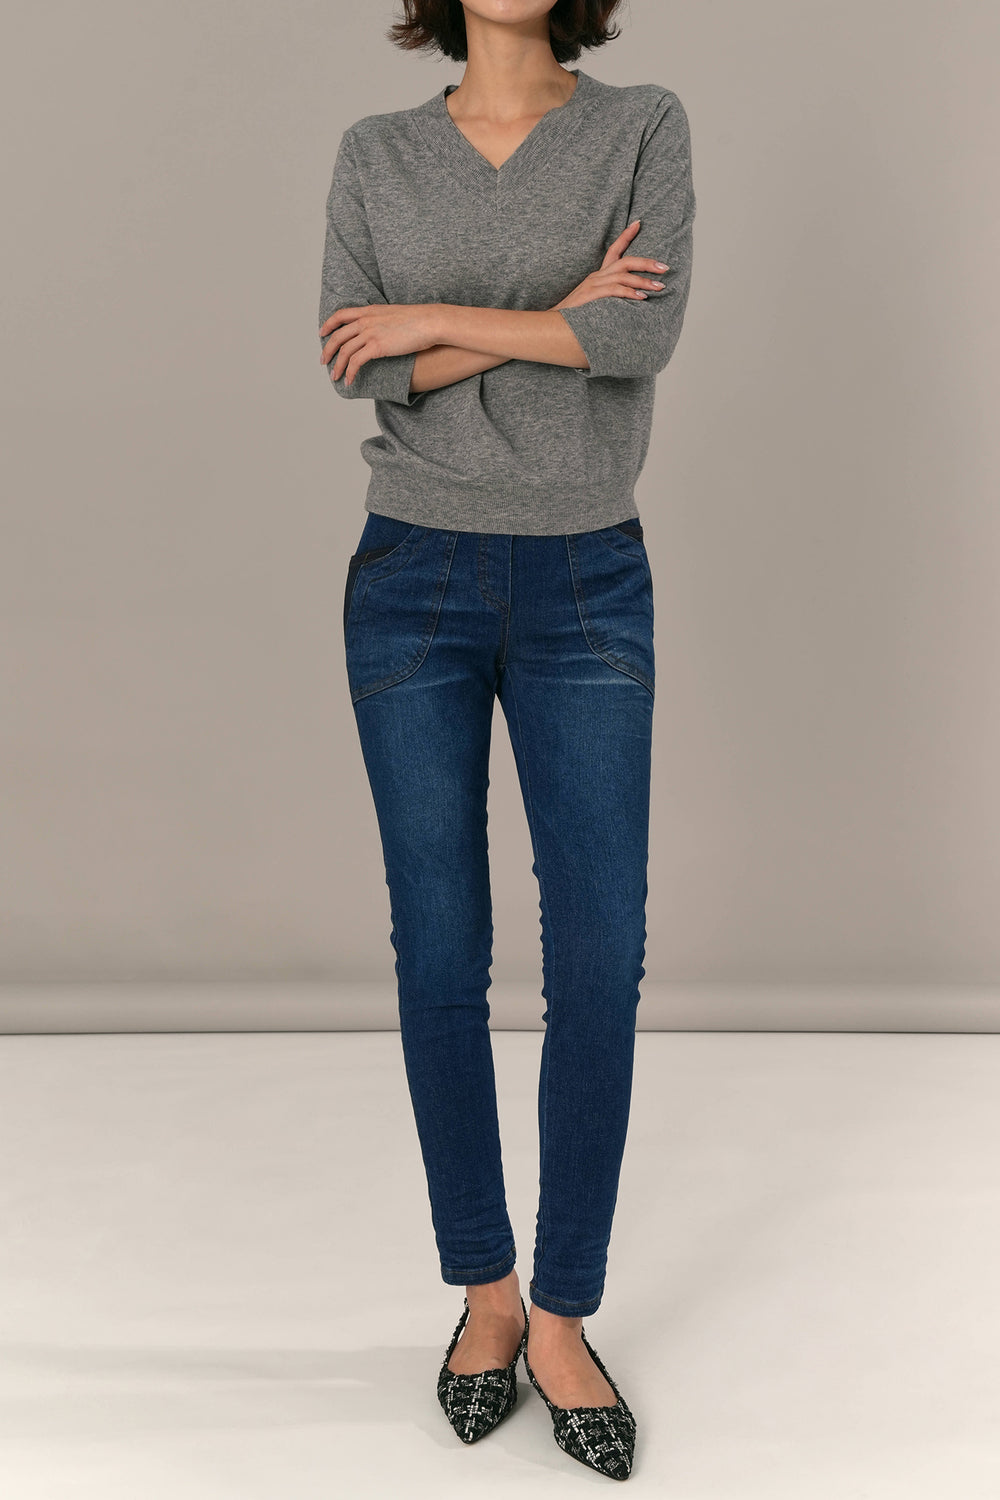 Althea Skinny Jeans, Deep Blue